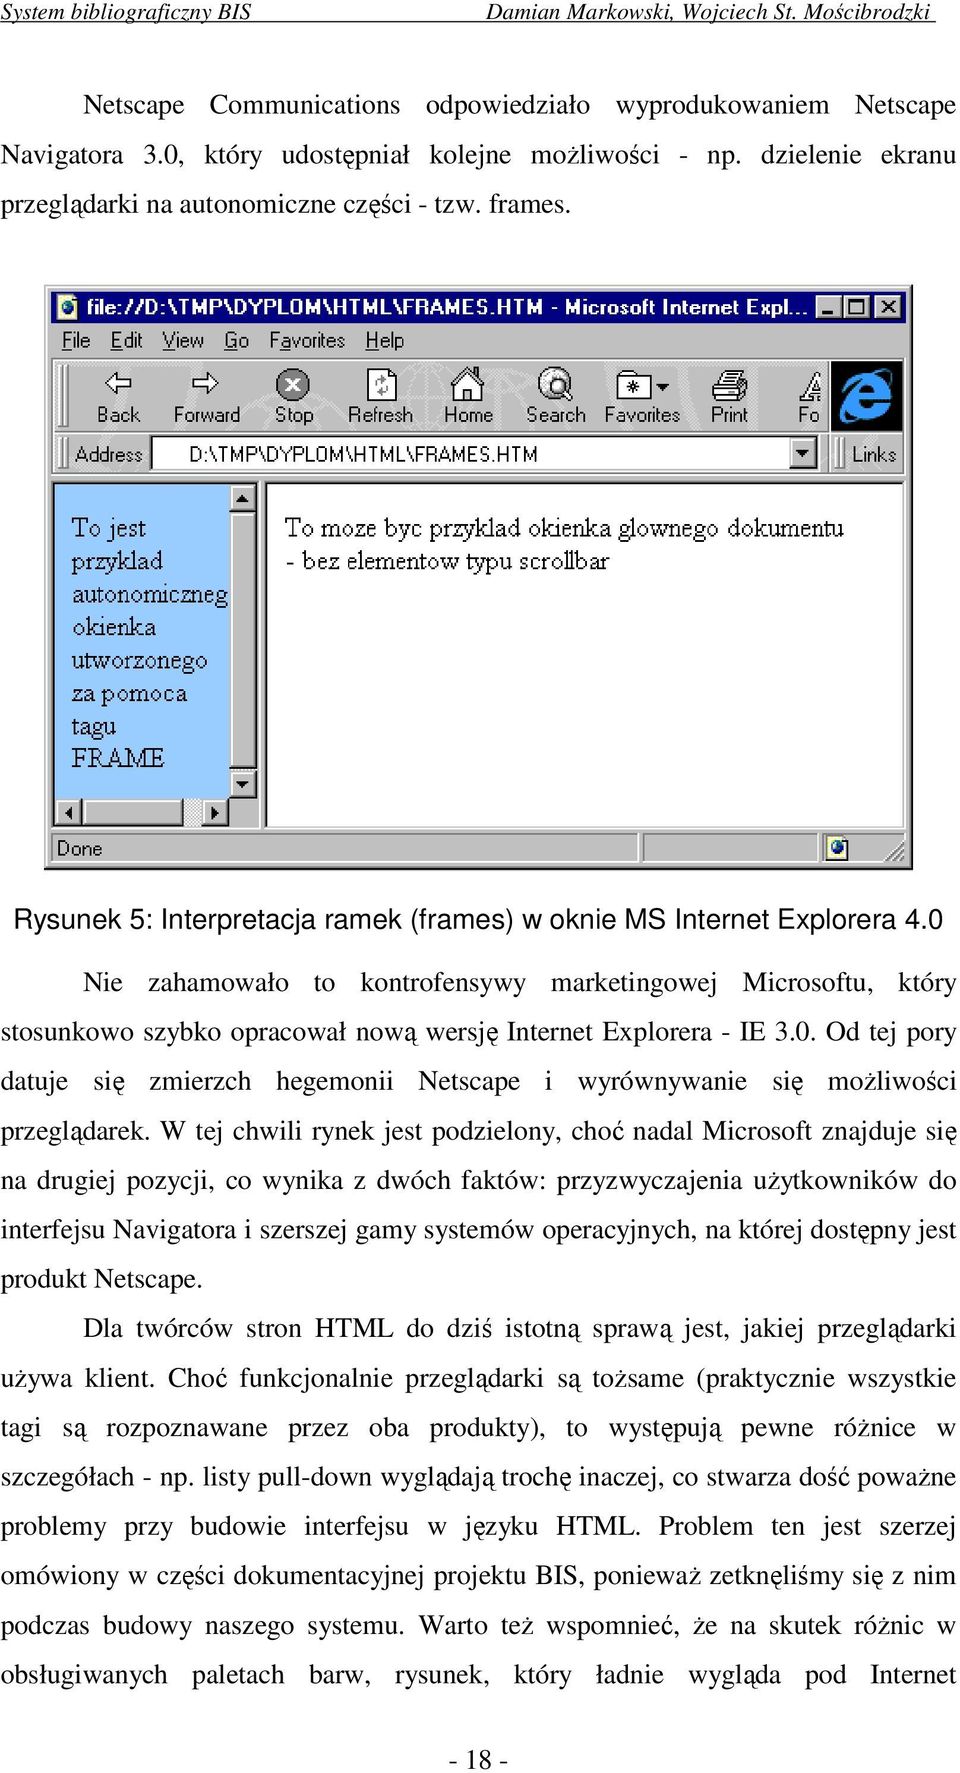 0 Nie zahamowało to kontrofensywy marketingowej Microsoftu, który stosunkowo szybko opracował nową wersję Internet Explorera - IE 3.0. Od tej pory datuje się zmierzch hegemonii Netscape i wyrównywanie się możliwości przeglądarek.